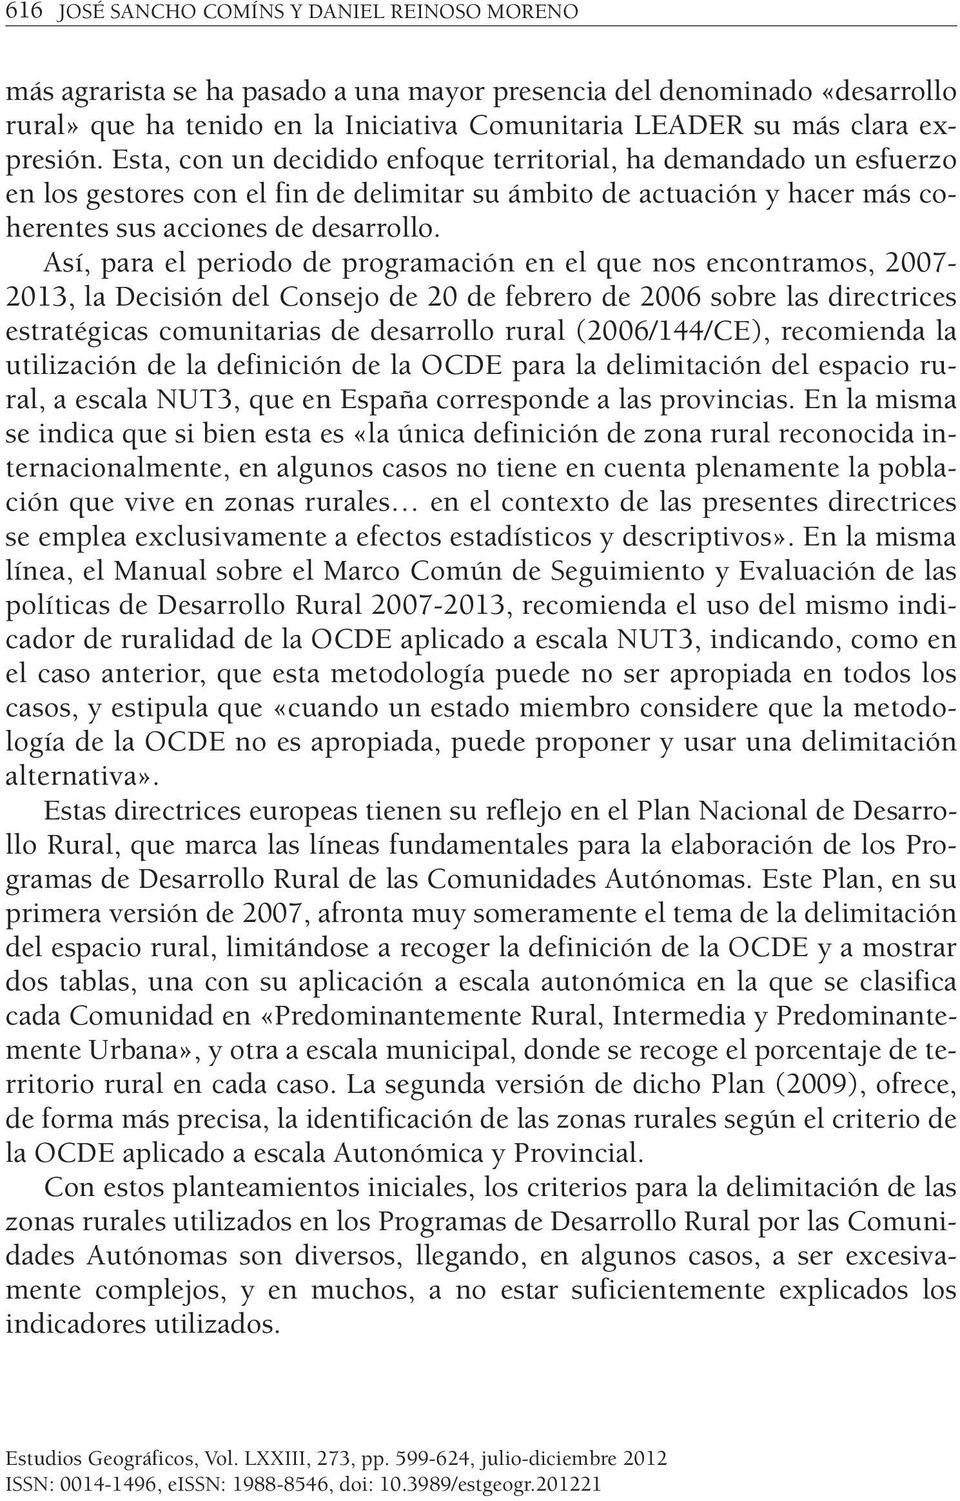 Así, para el periodo de programación en el que nos encontramos, 2007-2013, la Decisión del Consejo de 20 de febrero de 2006 sobre las directrices estratégicas comunitarias de desarrollo rural